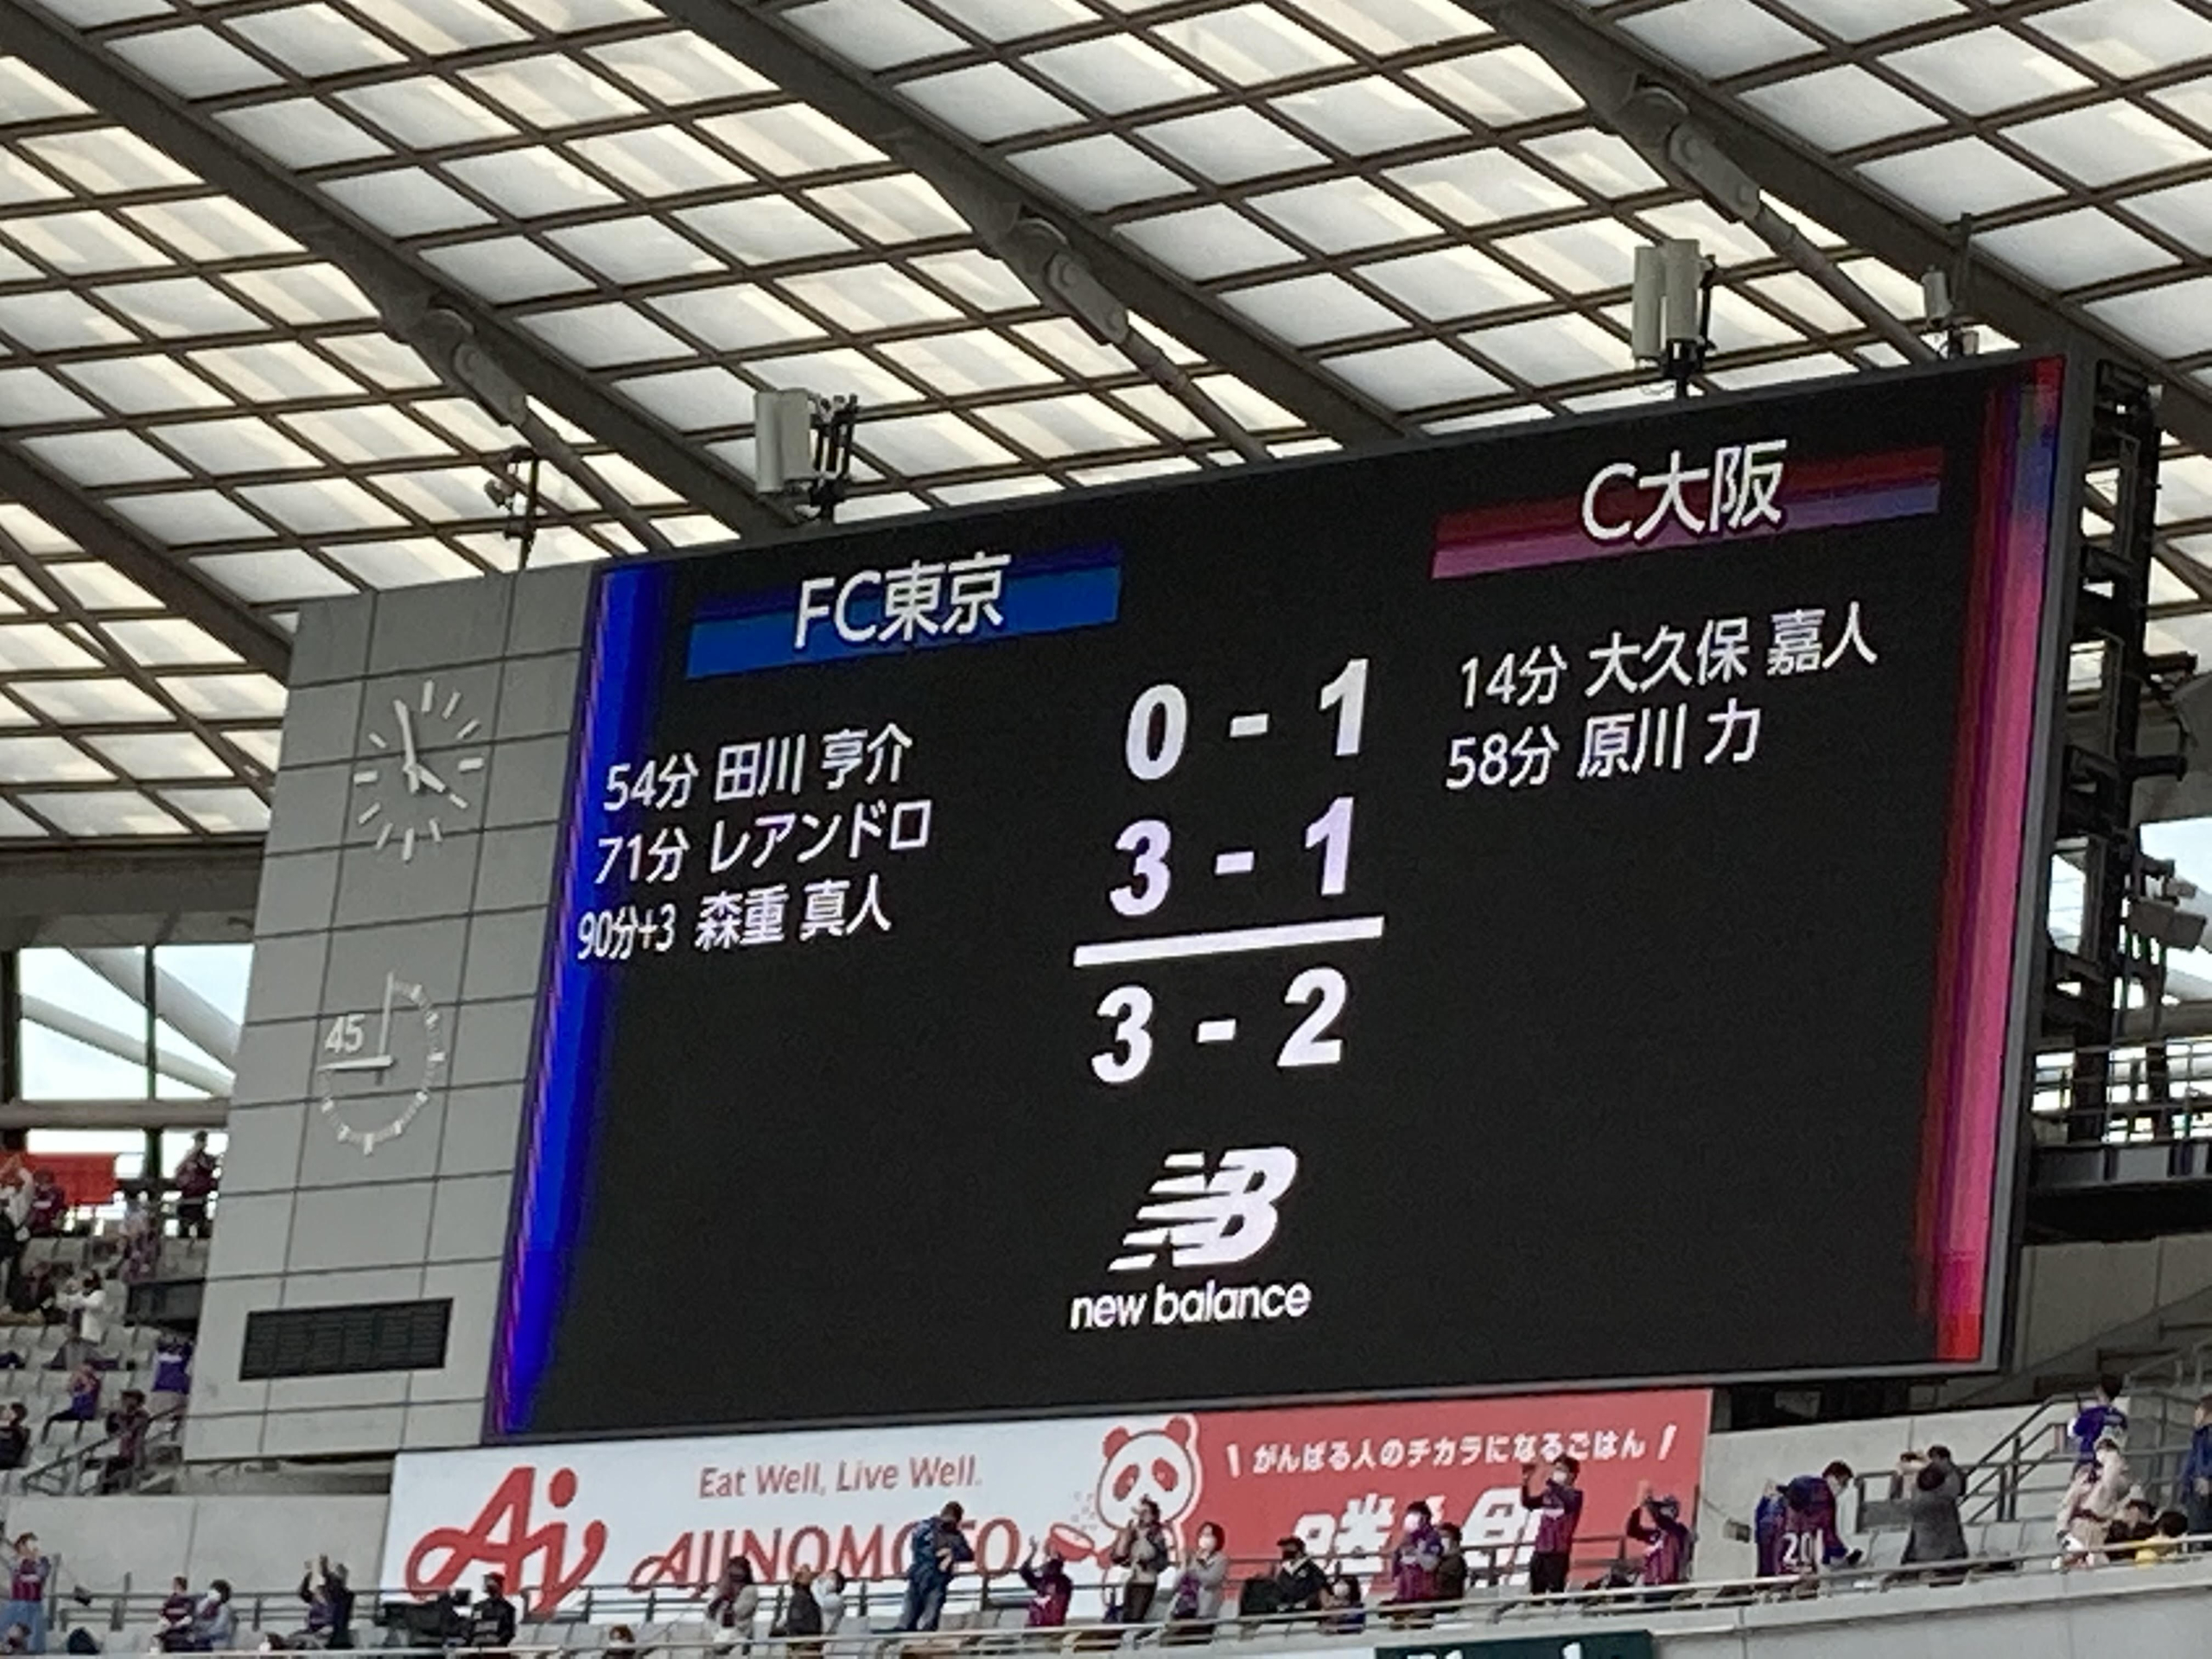 セレッソ大阪 原川力 ACL レプリカ ユニフォーム - サッカー/フットサル